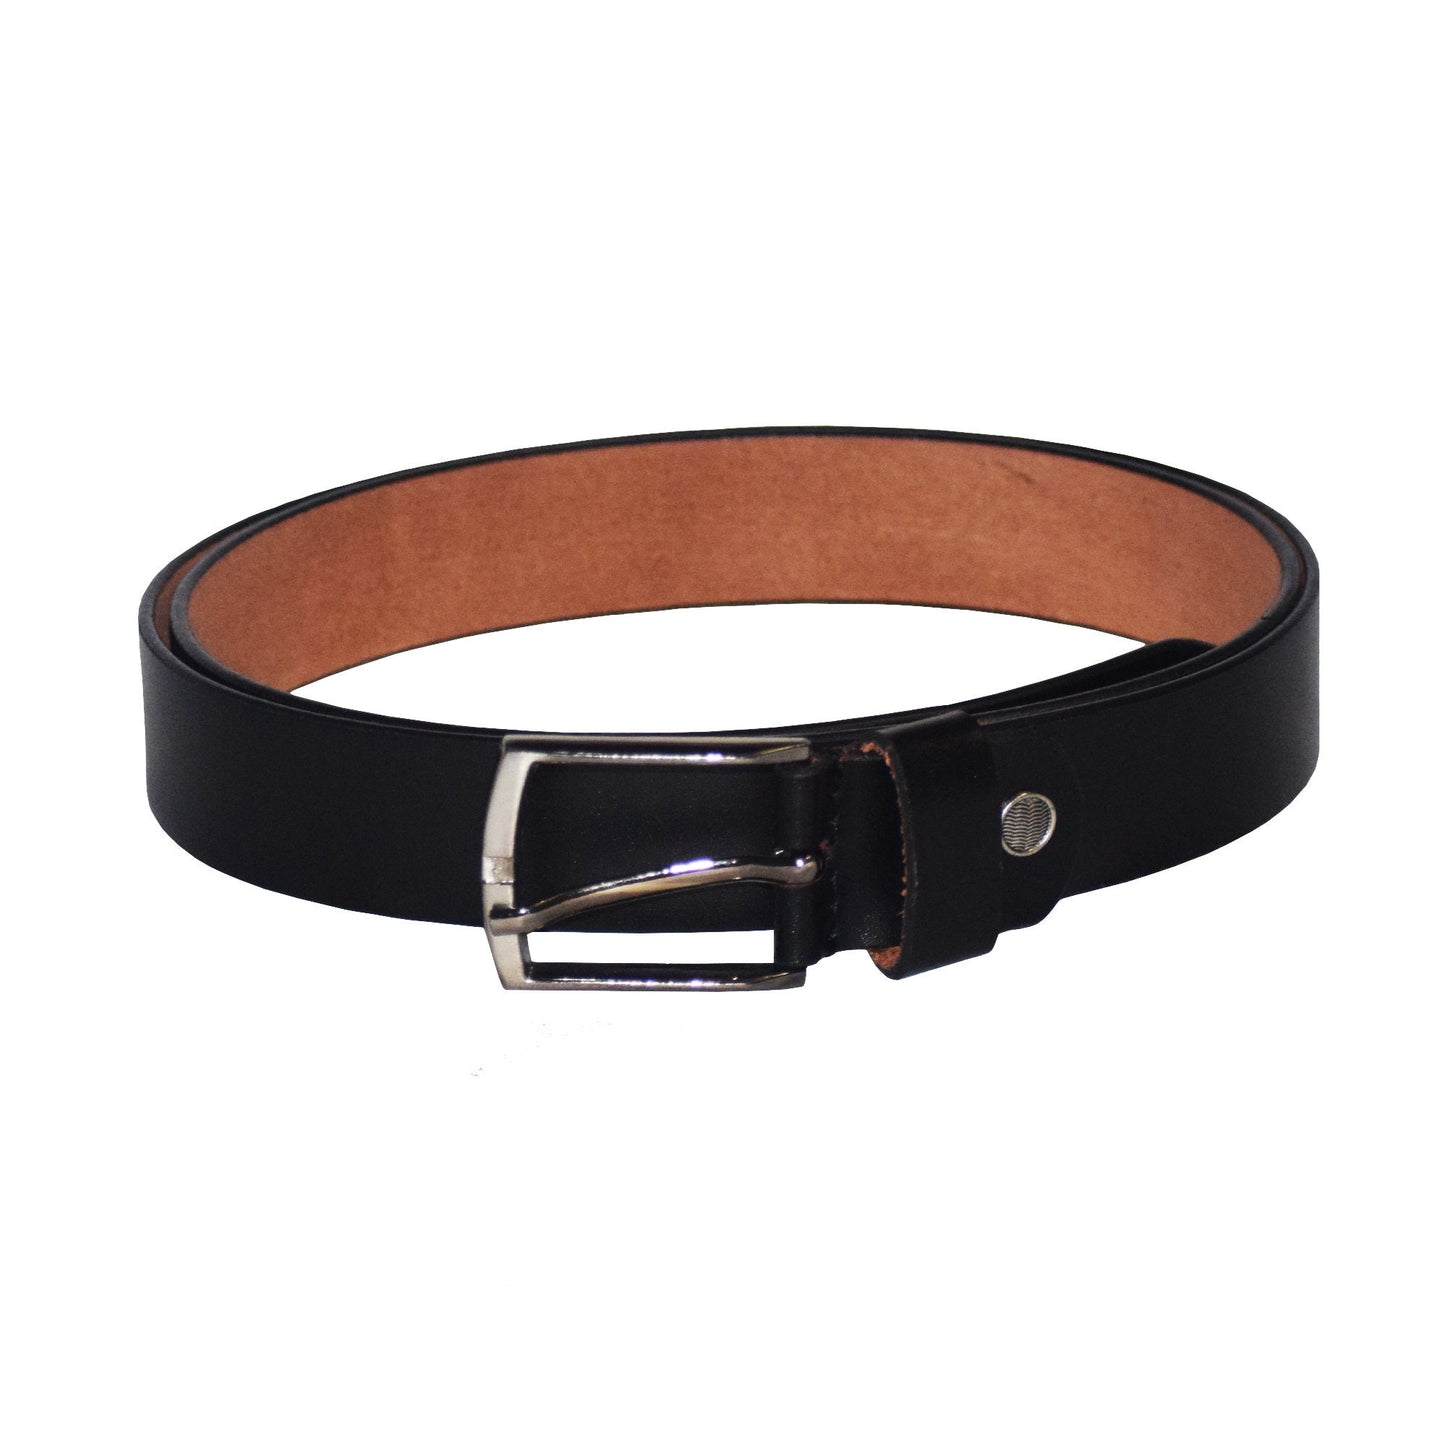 Full Grain Genuine Leather Belt For Mens Black Leather Belt Mens Leather Belt Womens Leather Belt Leather Waist Belt Gift For Him